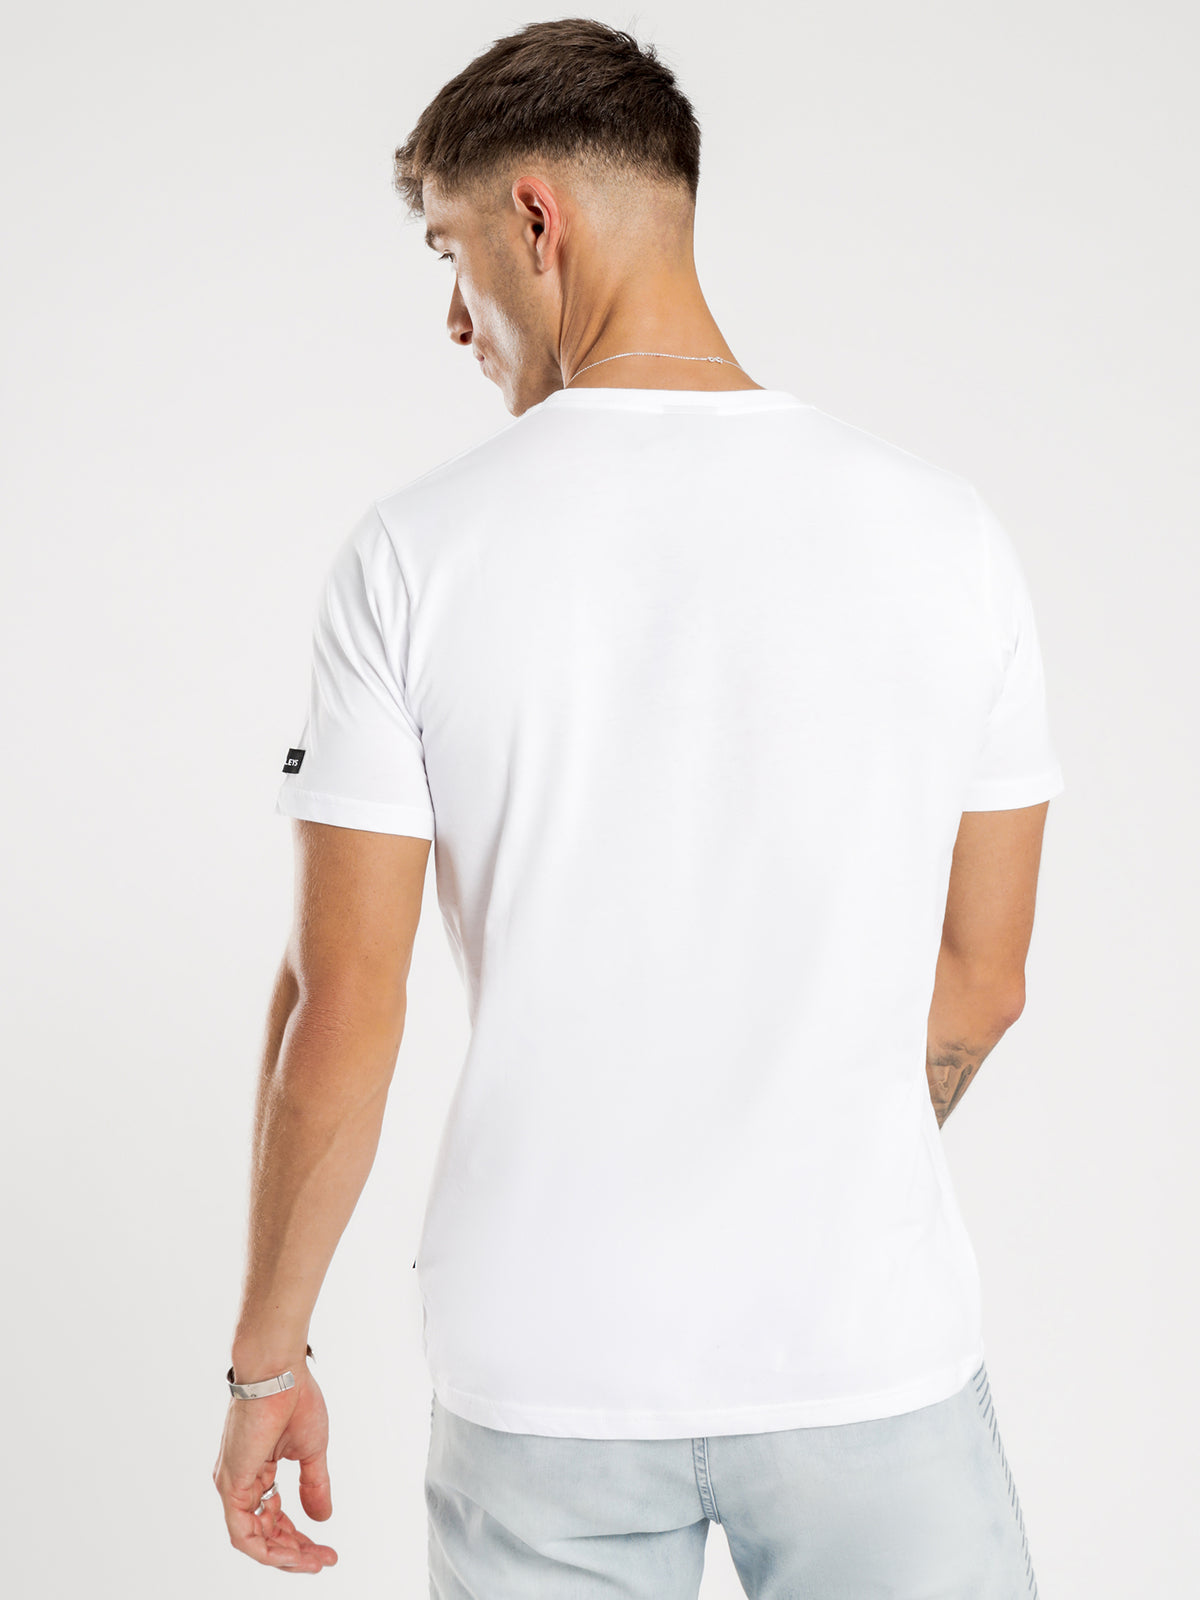 Nico T-Shirt in White